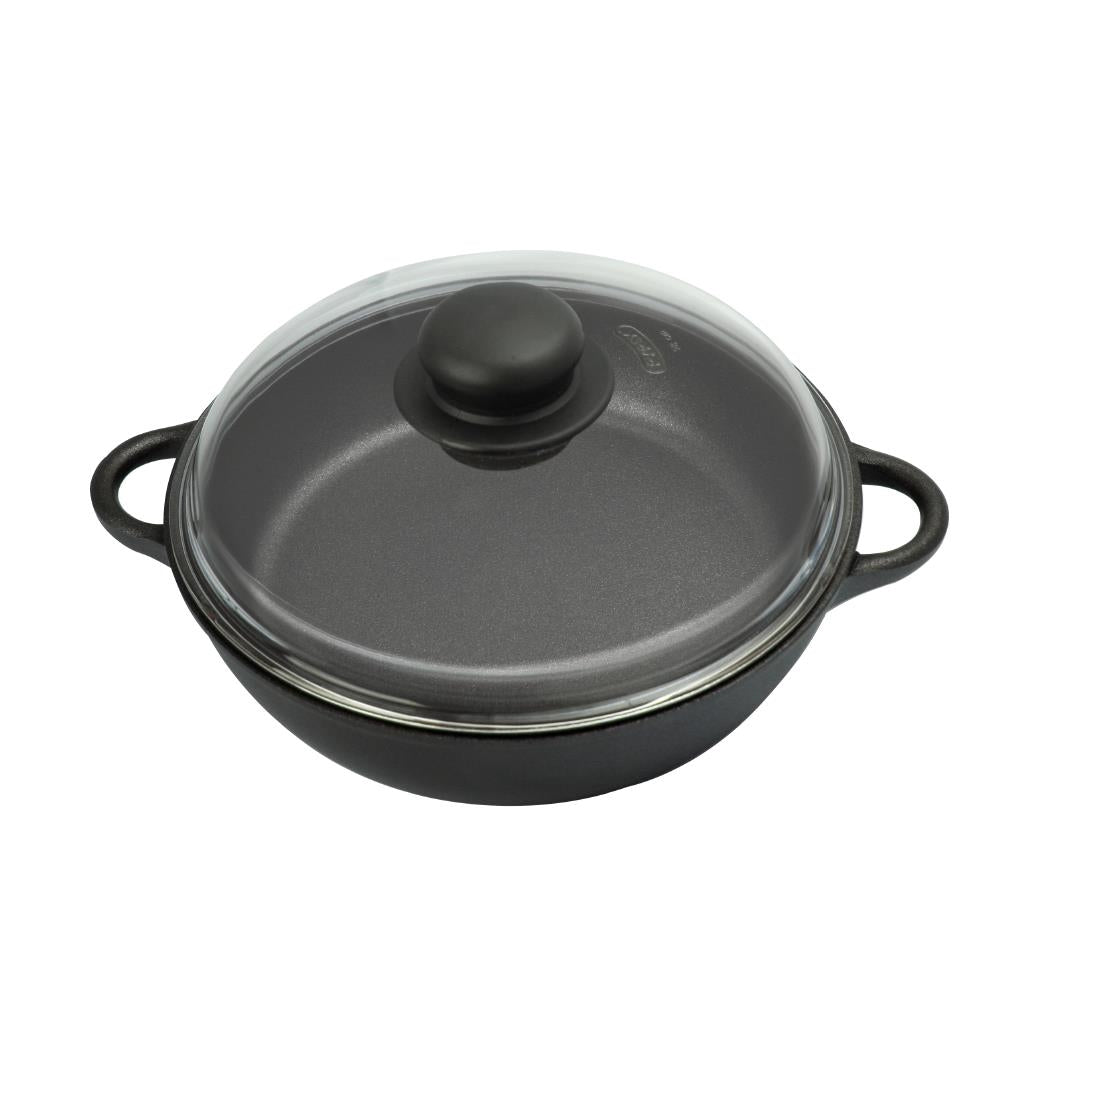 AT314 Josper Charcoal Oven Casserole Dish Ã˜ 20